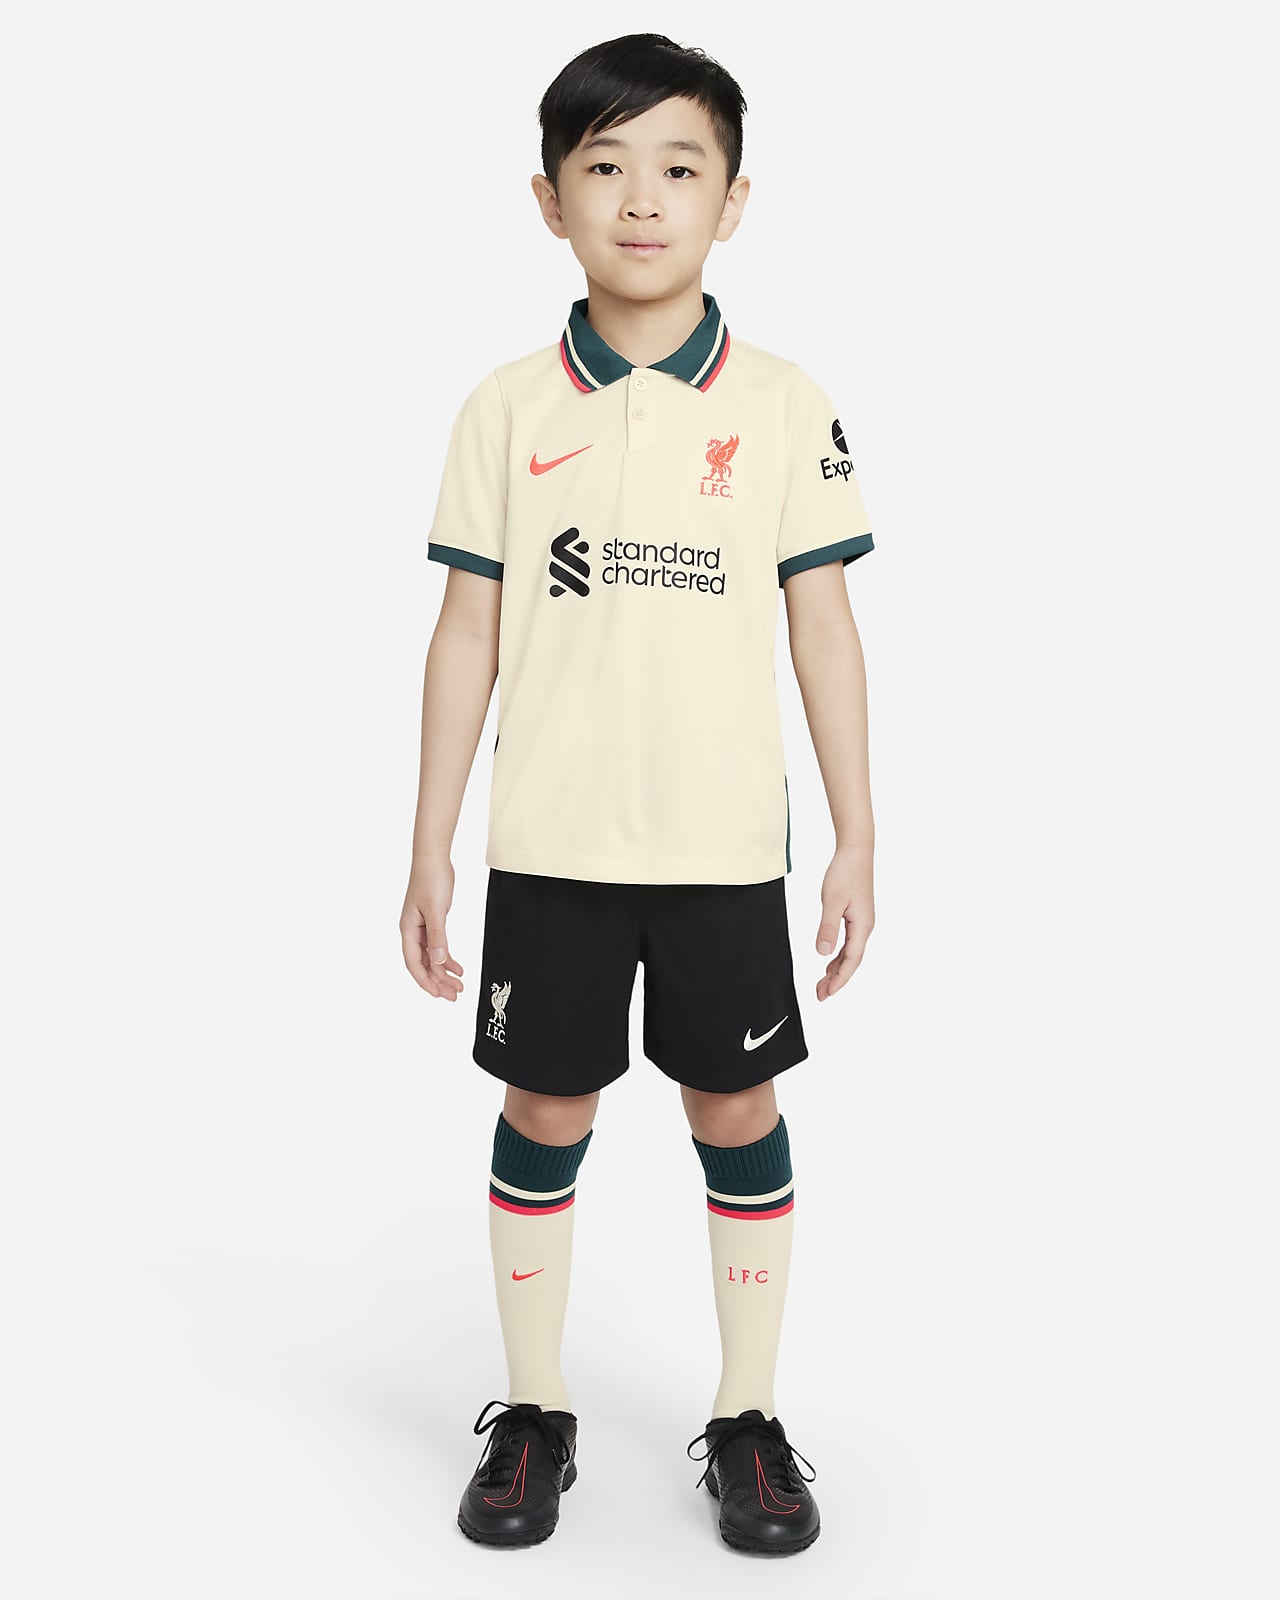 Younger Kids' Football Kit. Nike SA